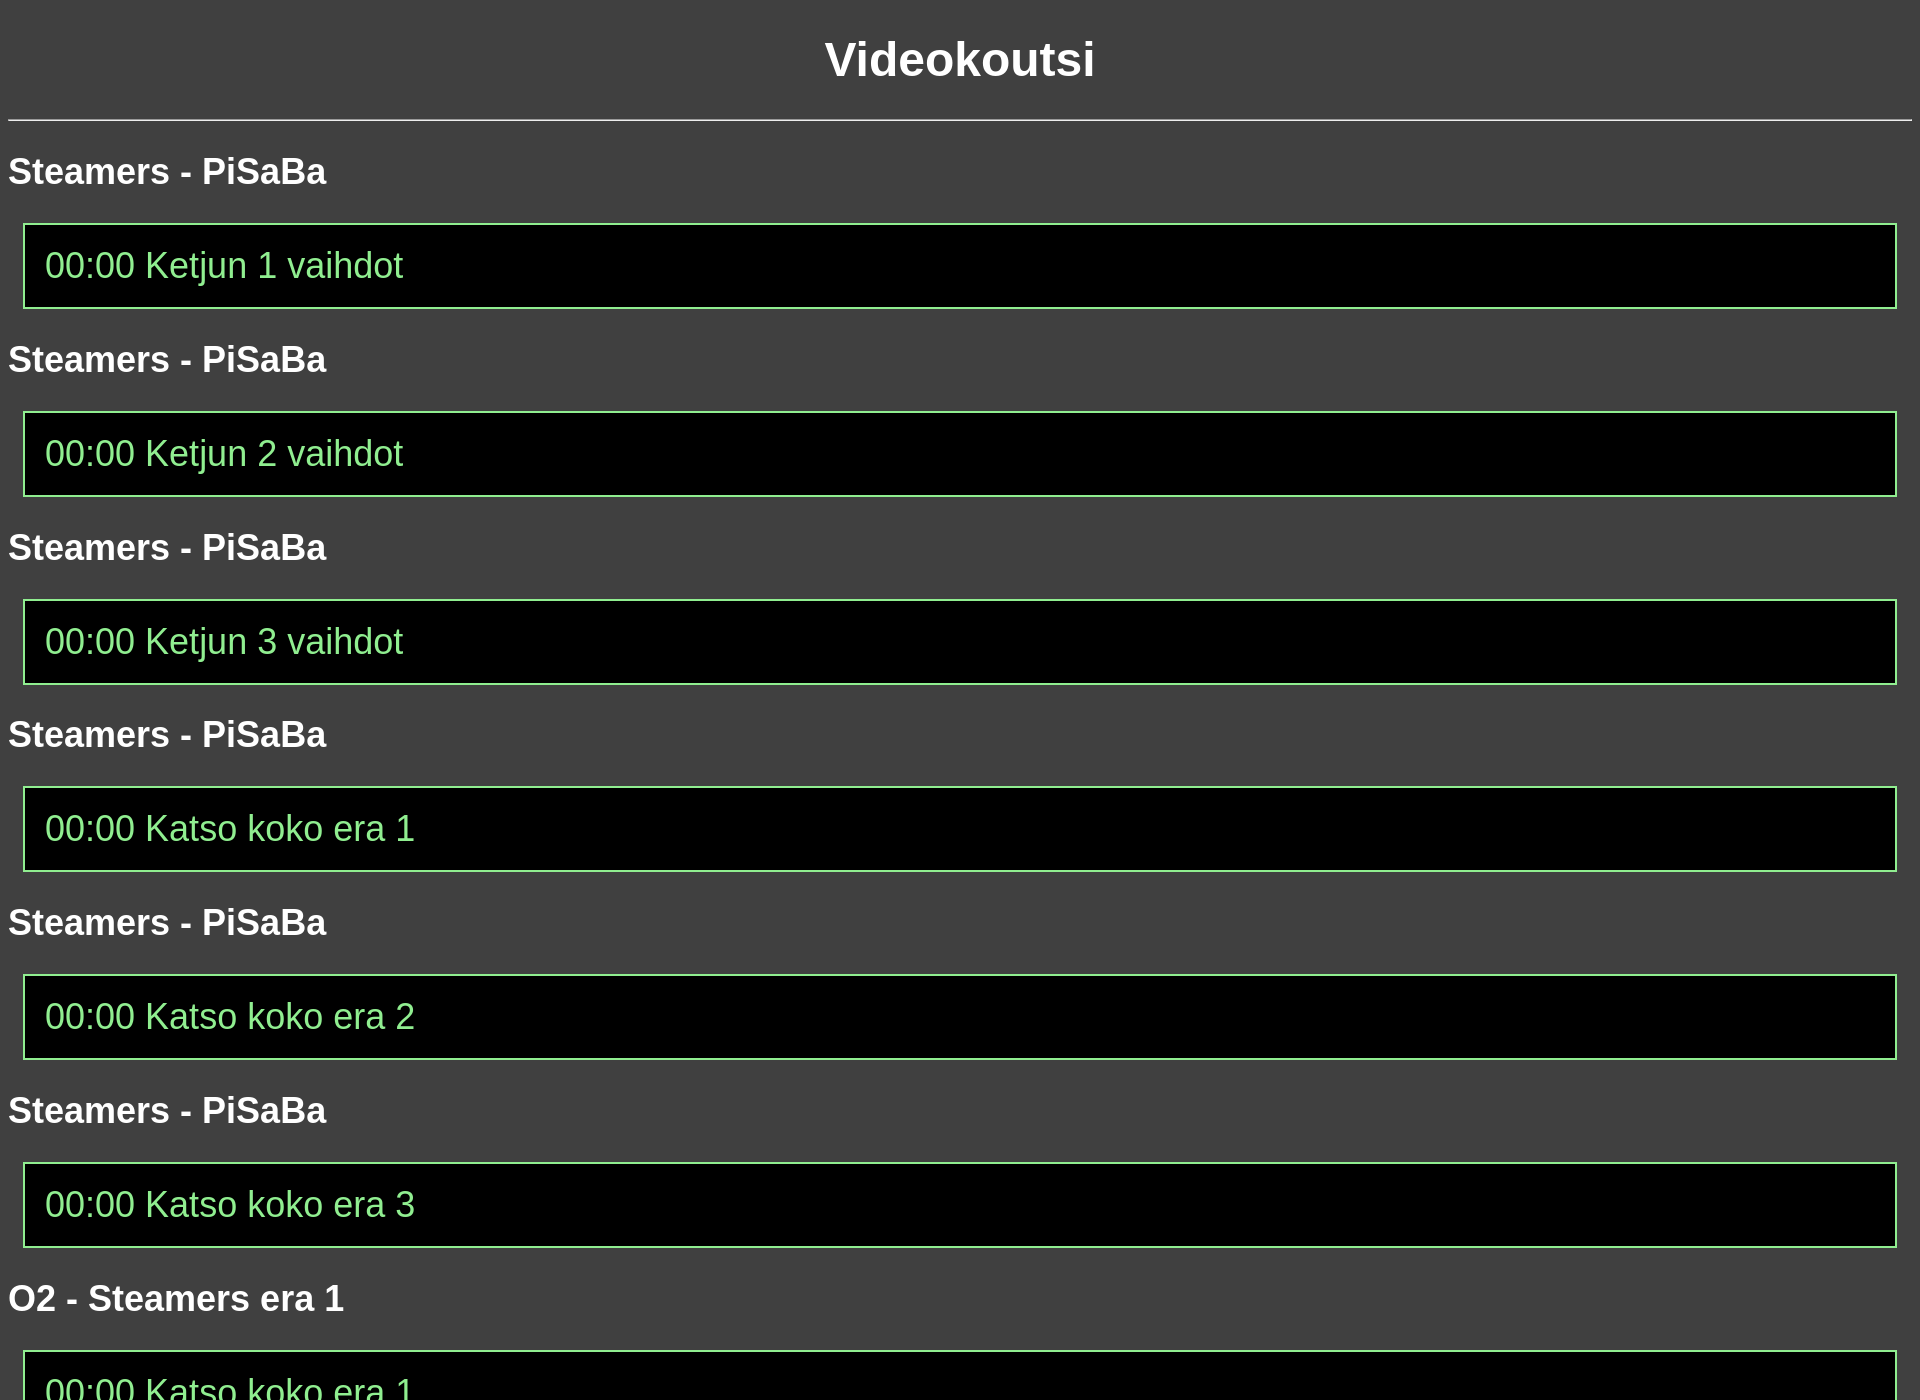 Skärmdump för videokoutsi.fi